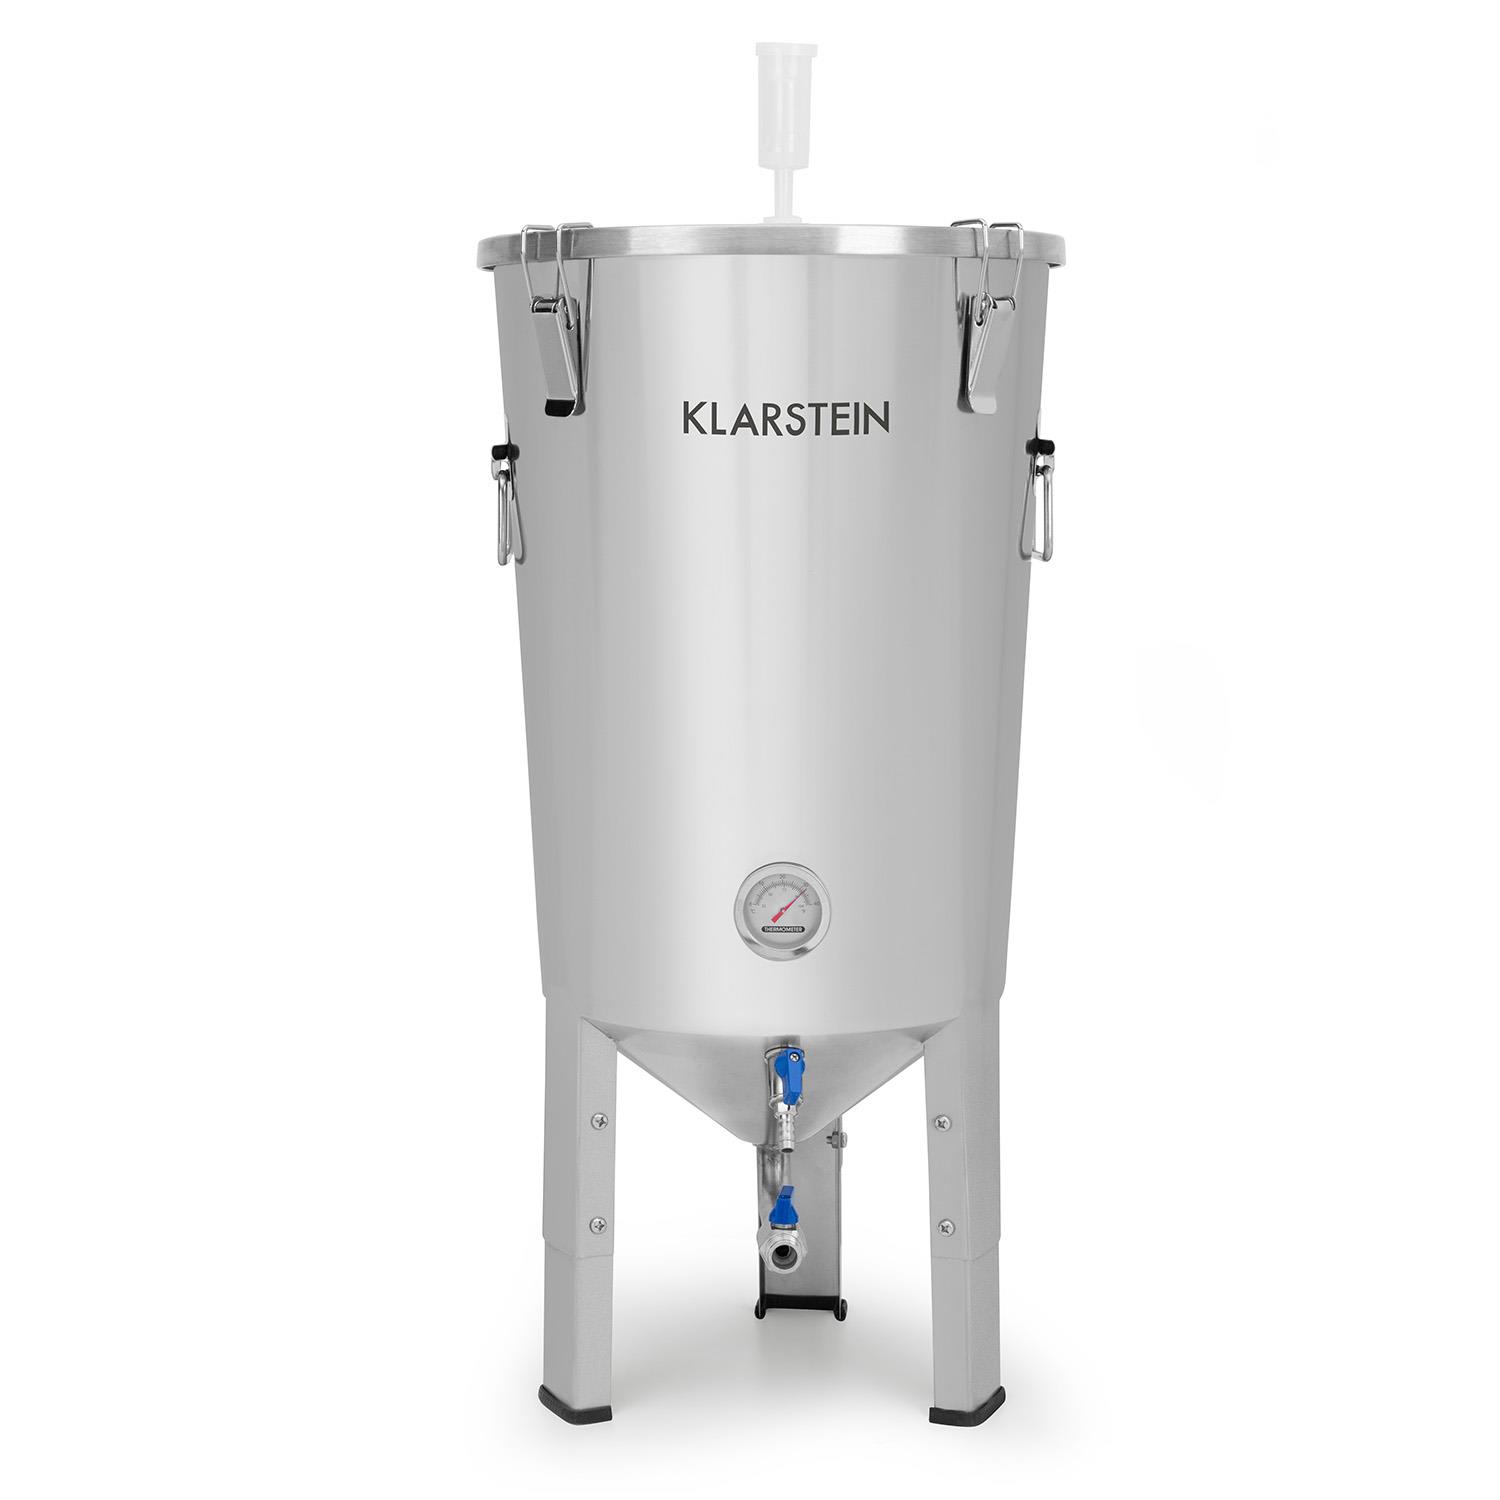 E-shop Klarstein Gärkeller Pro, fermentačný kotol, 30 l, ventil na vypúšťanie kvásku, nehrdzavejúca oceľ 304